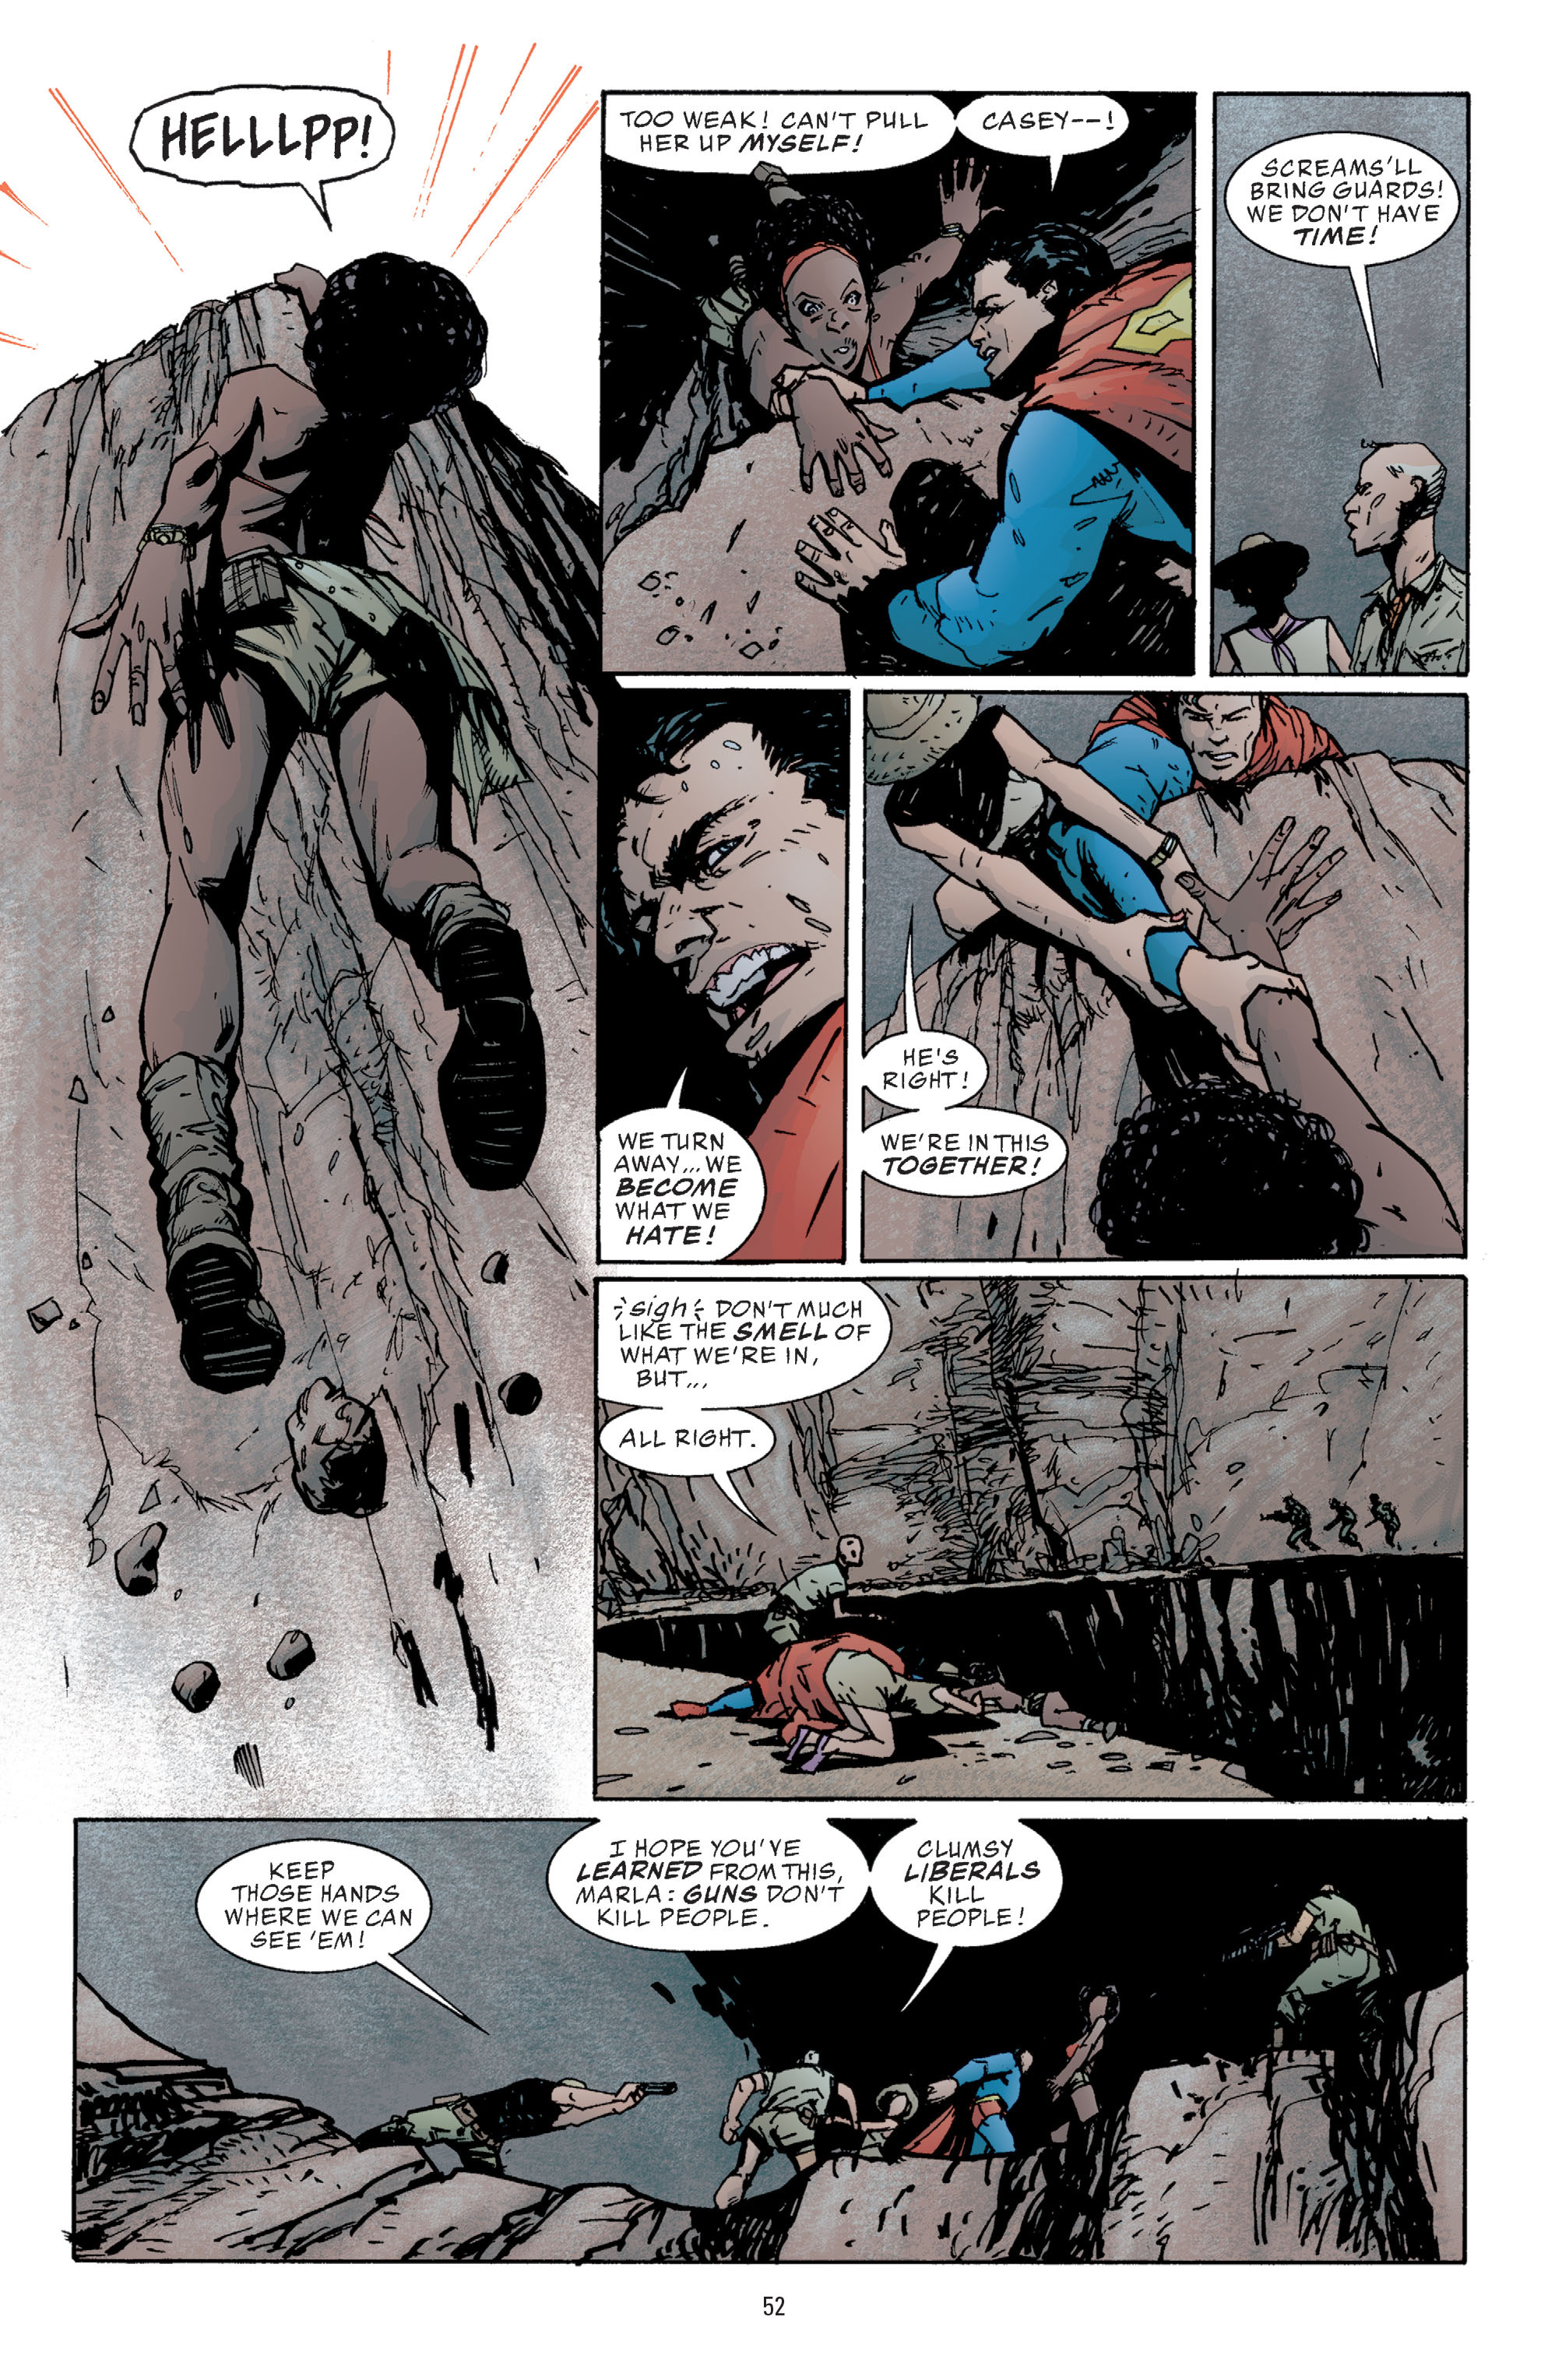 DC Comics/Dark Horse Comics: Justice League Full #1 - English 50